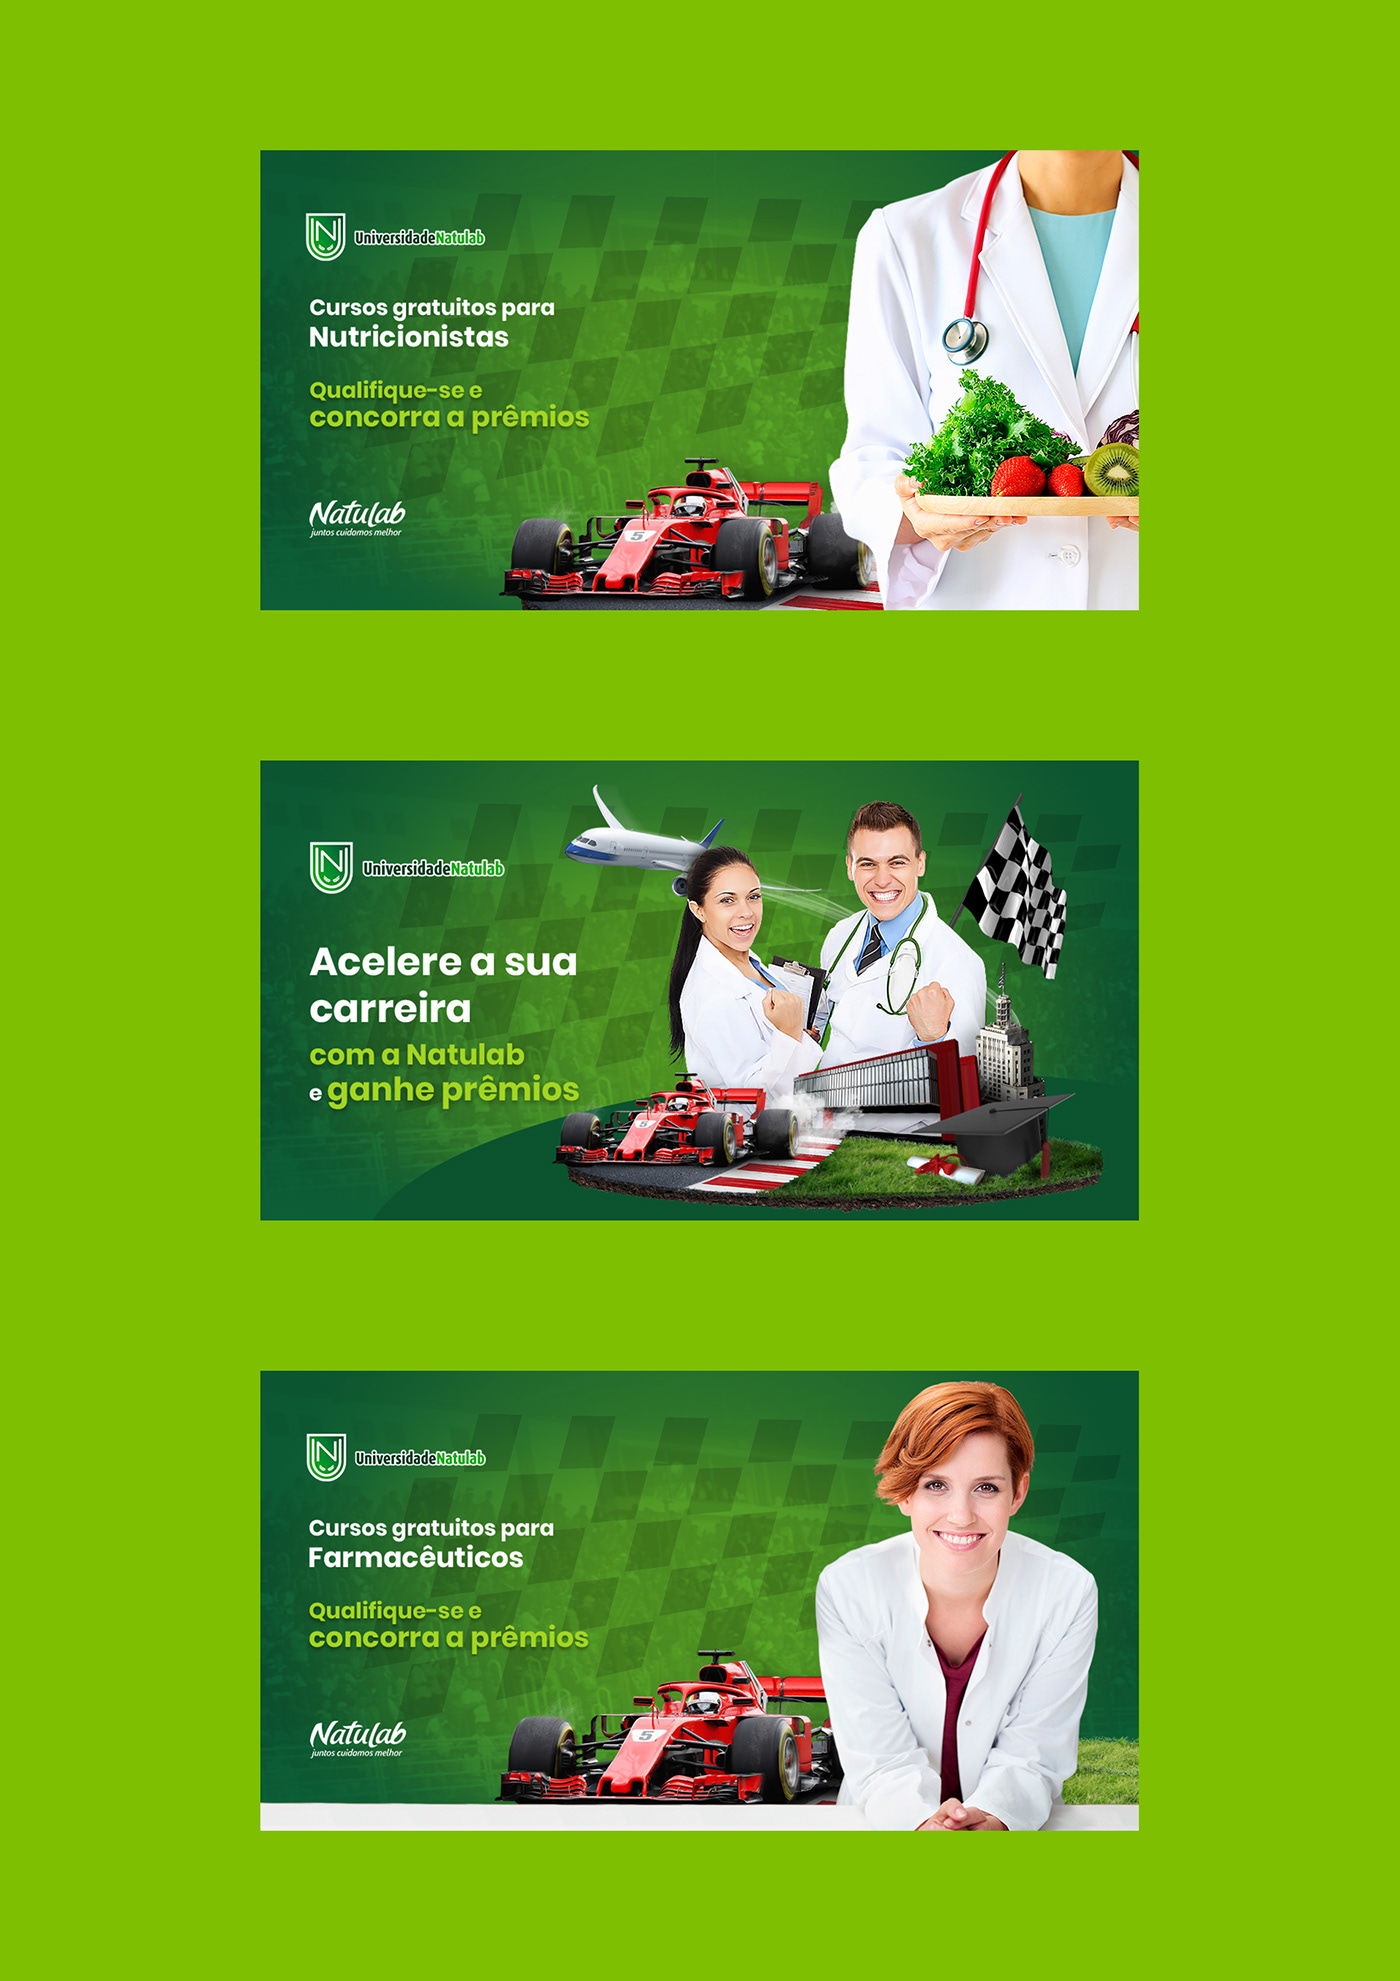 competição conteudo farmaceutico Formula 1 gamification inbound marketing Keyvisual kv Logo universidade online medicina Promoção